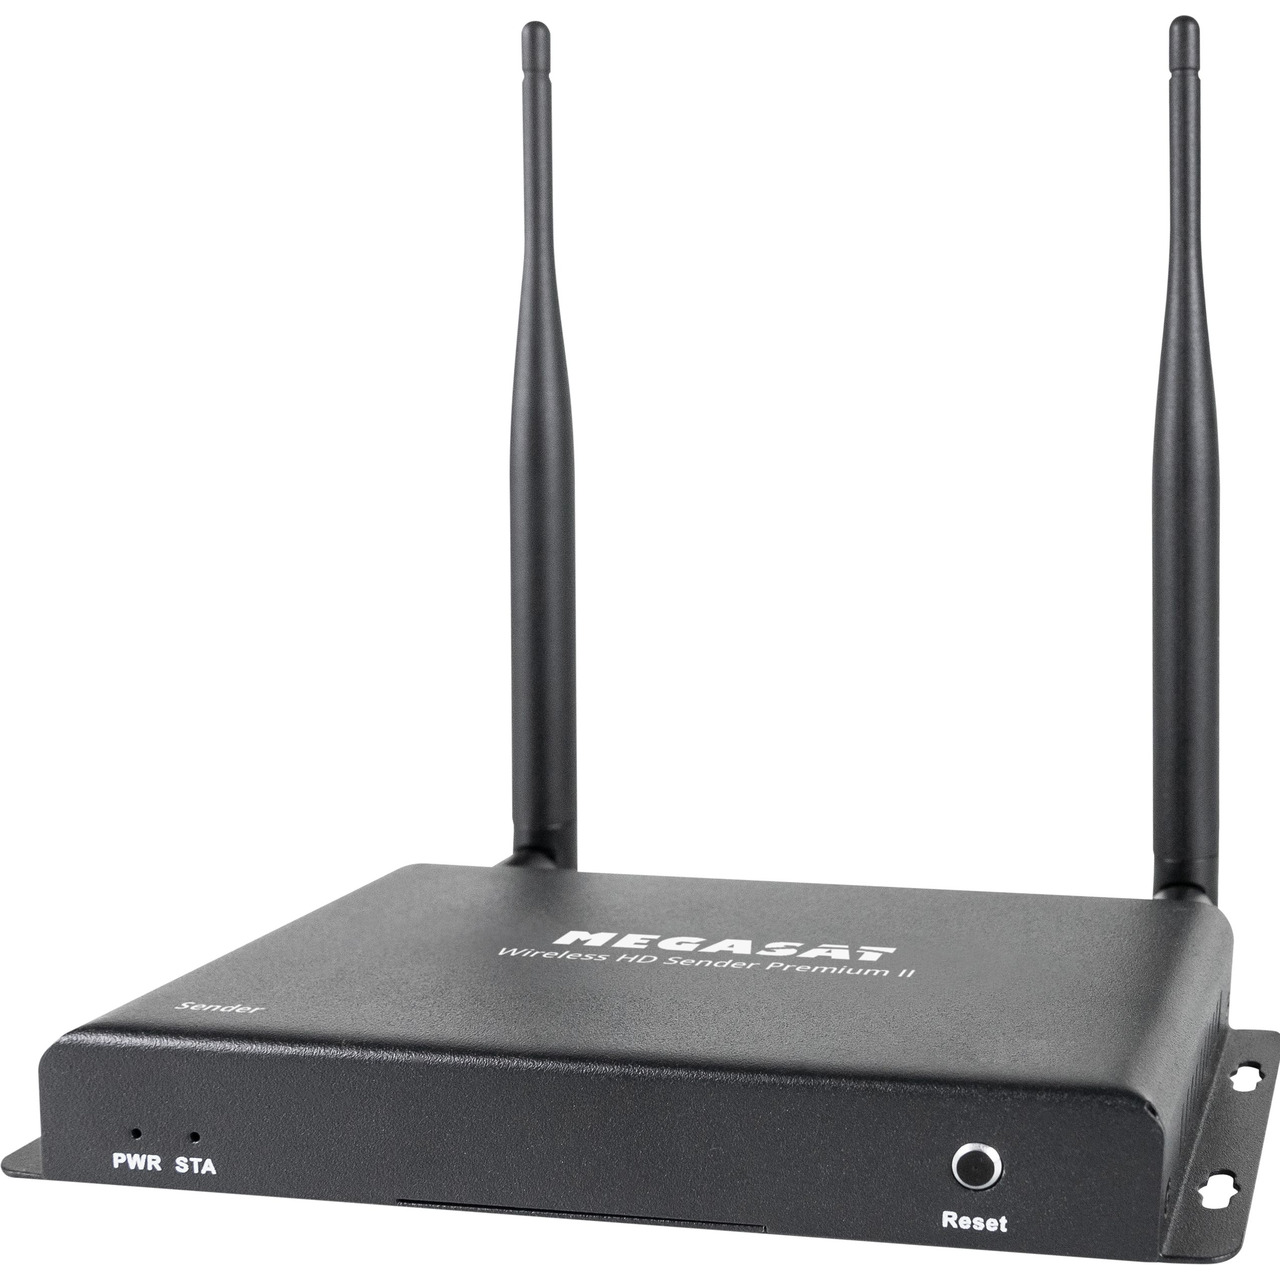 Megasat HDMI-Funkübertragungssystem Wireless HD Sender Premium II- 5-8 GHz- bis zu 200 m Reichweite unter Multimedia